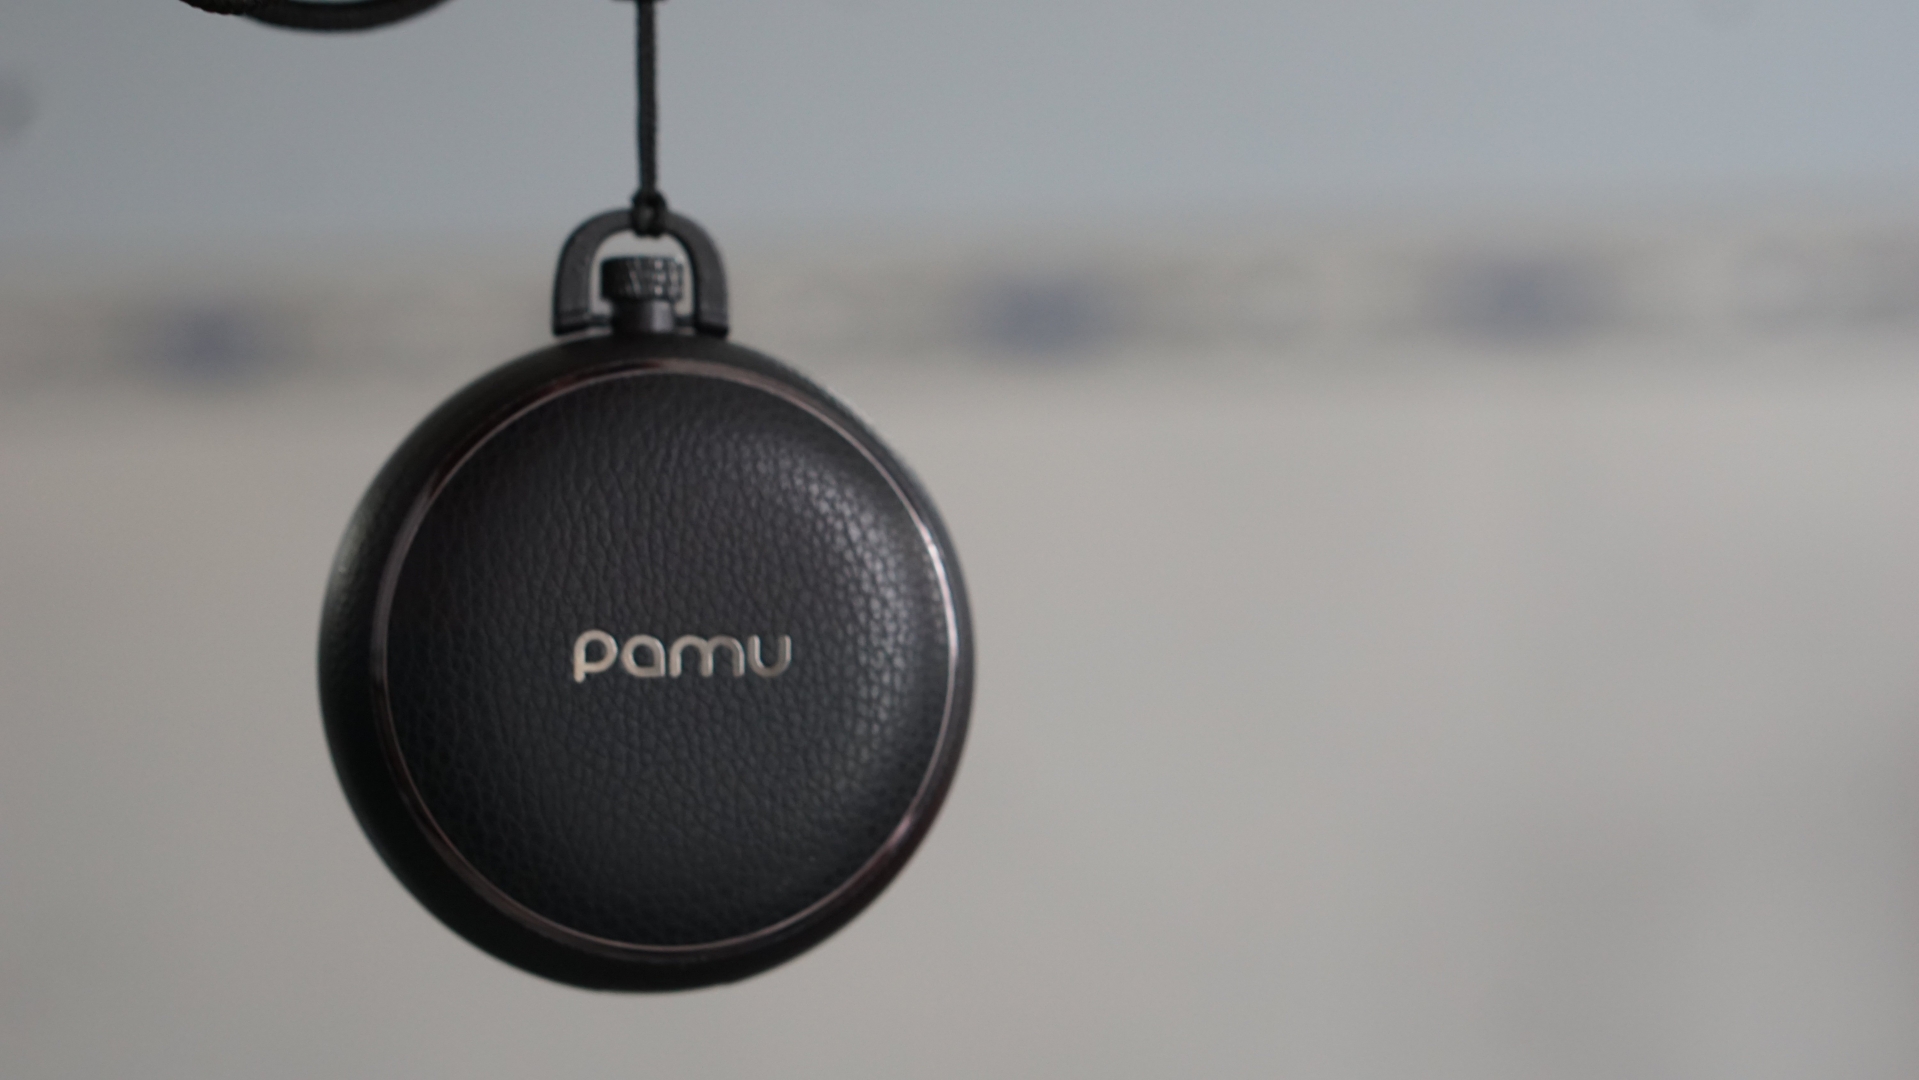 Pamu mới thiệu tai nghe mới Pamu Quiet có chống ồn chủ động